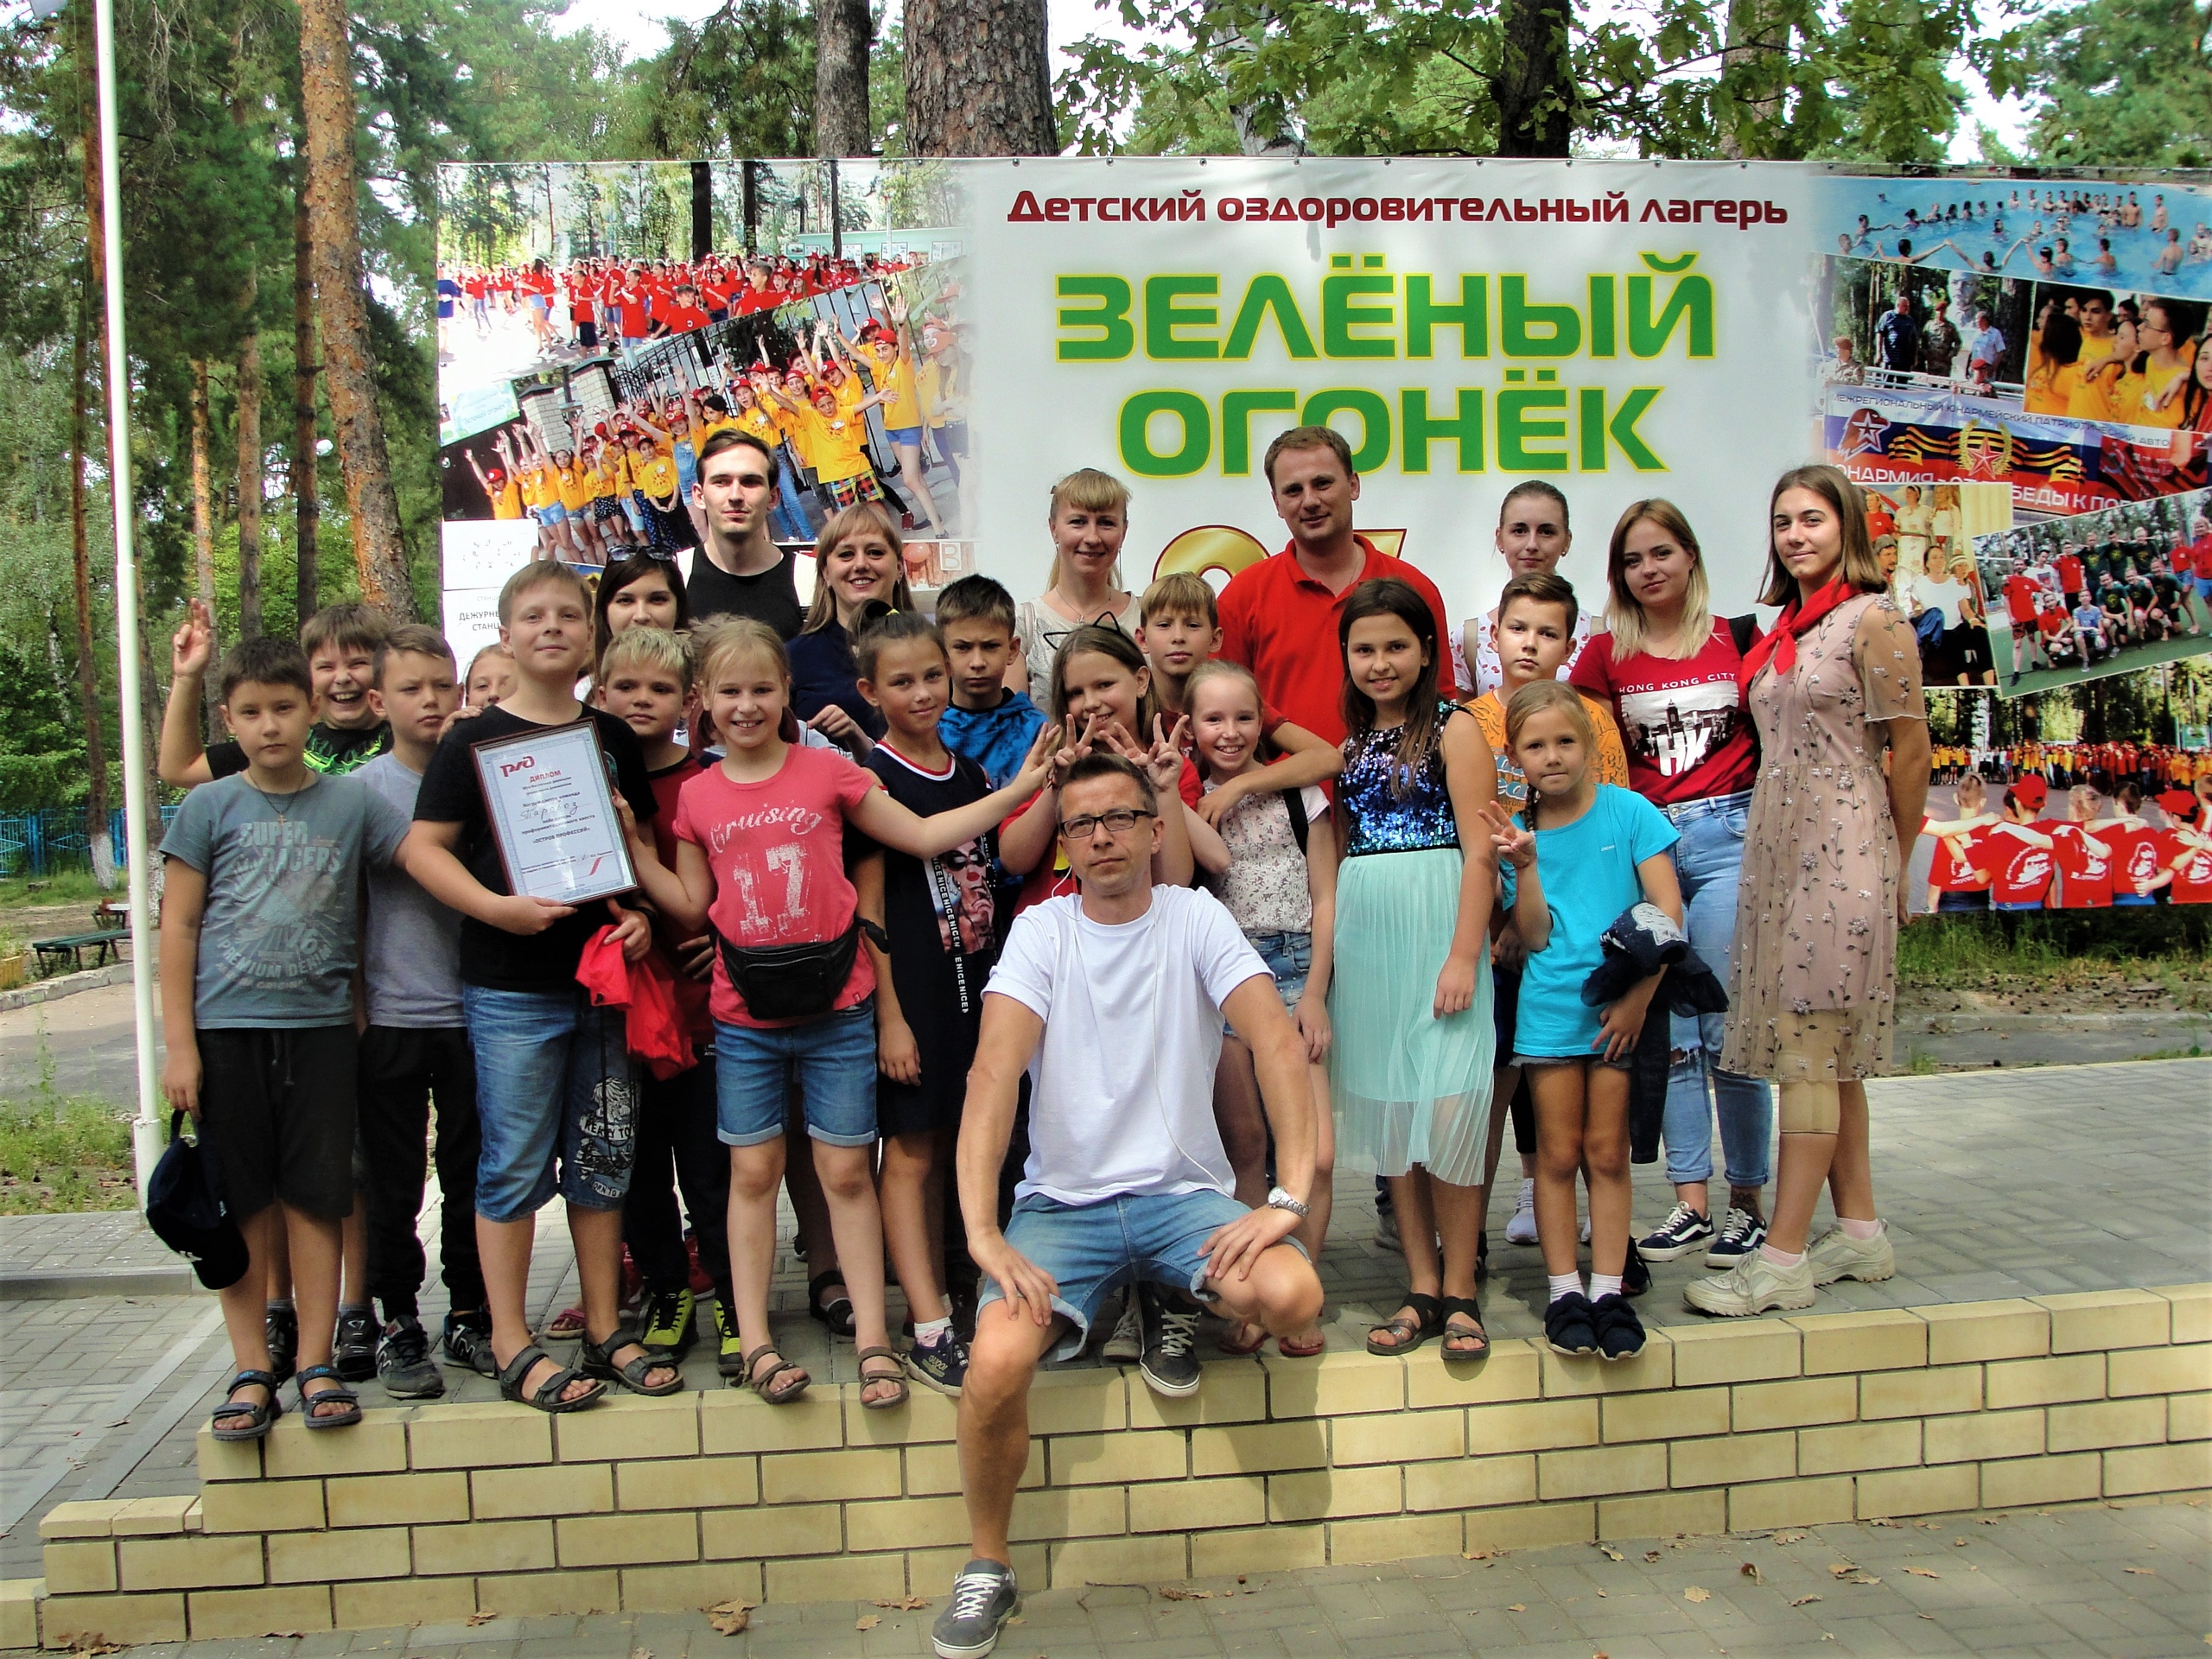 «Зеленый огонек» – Оздоровительный лагерь в Воронеже, фото 1